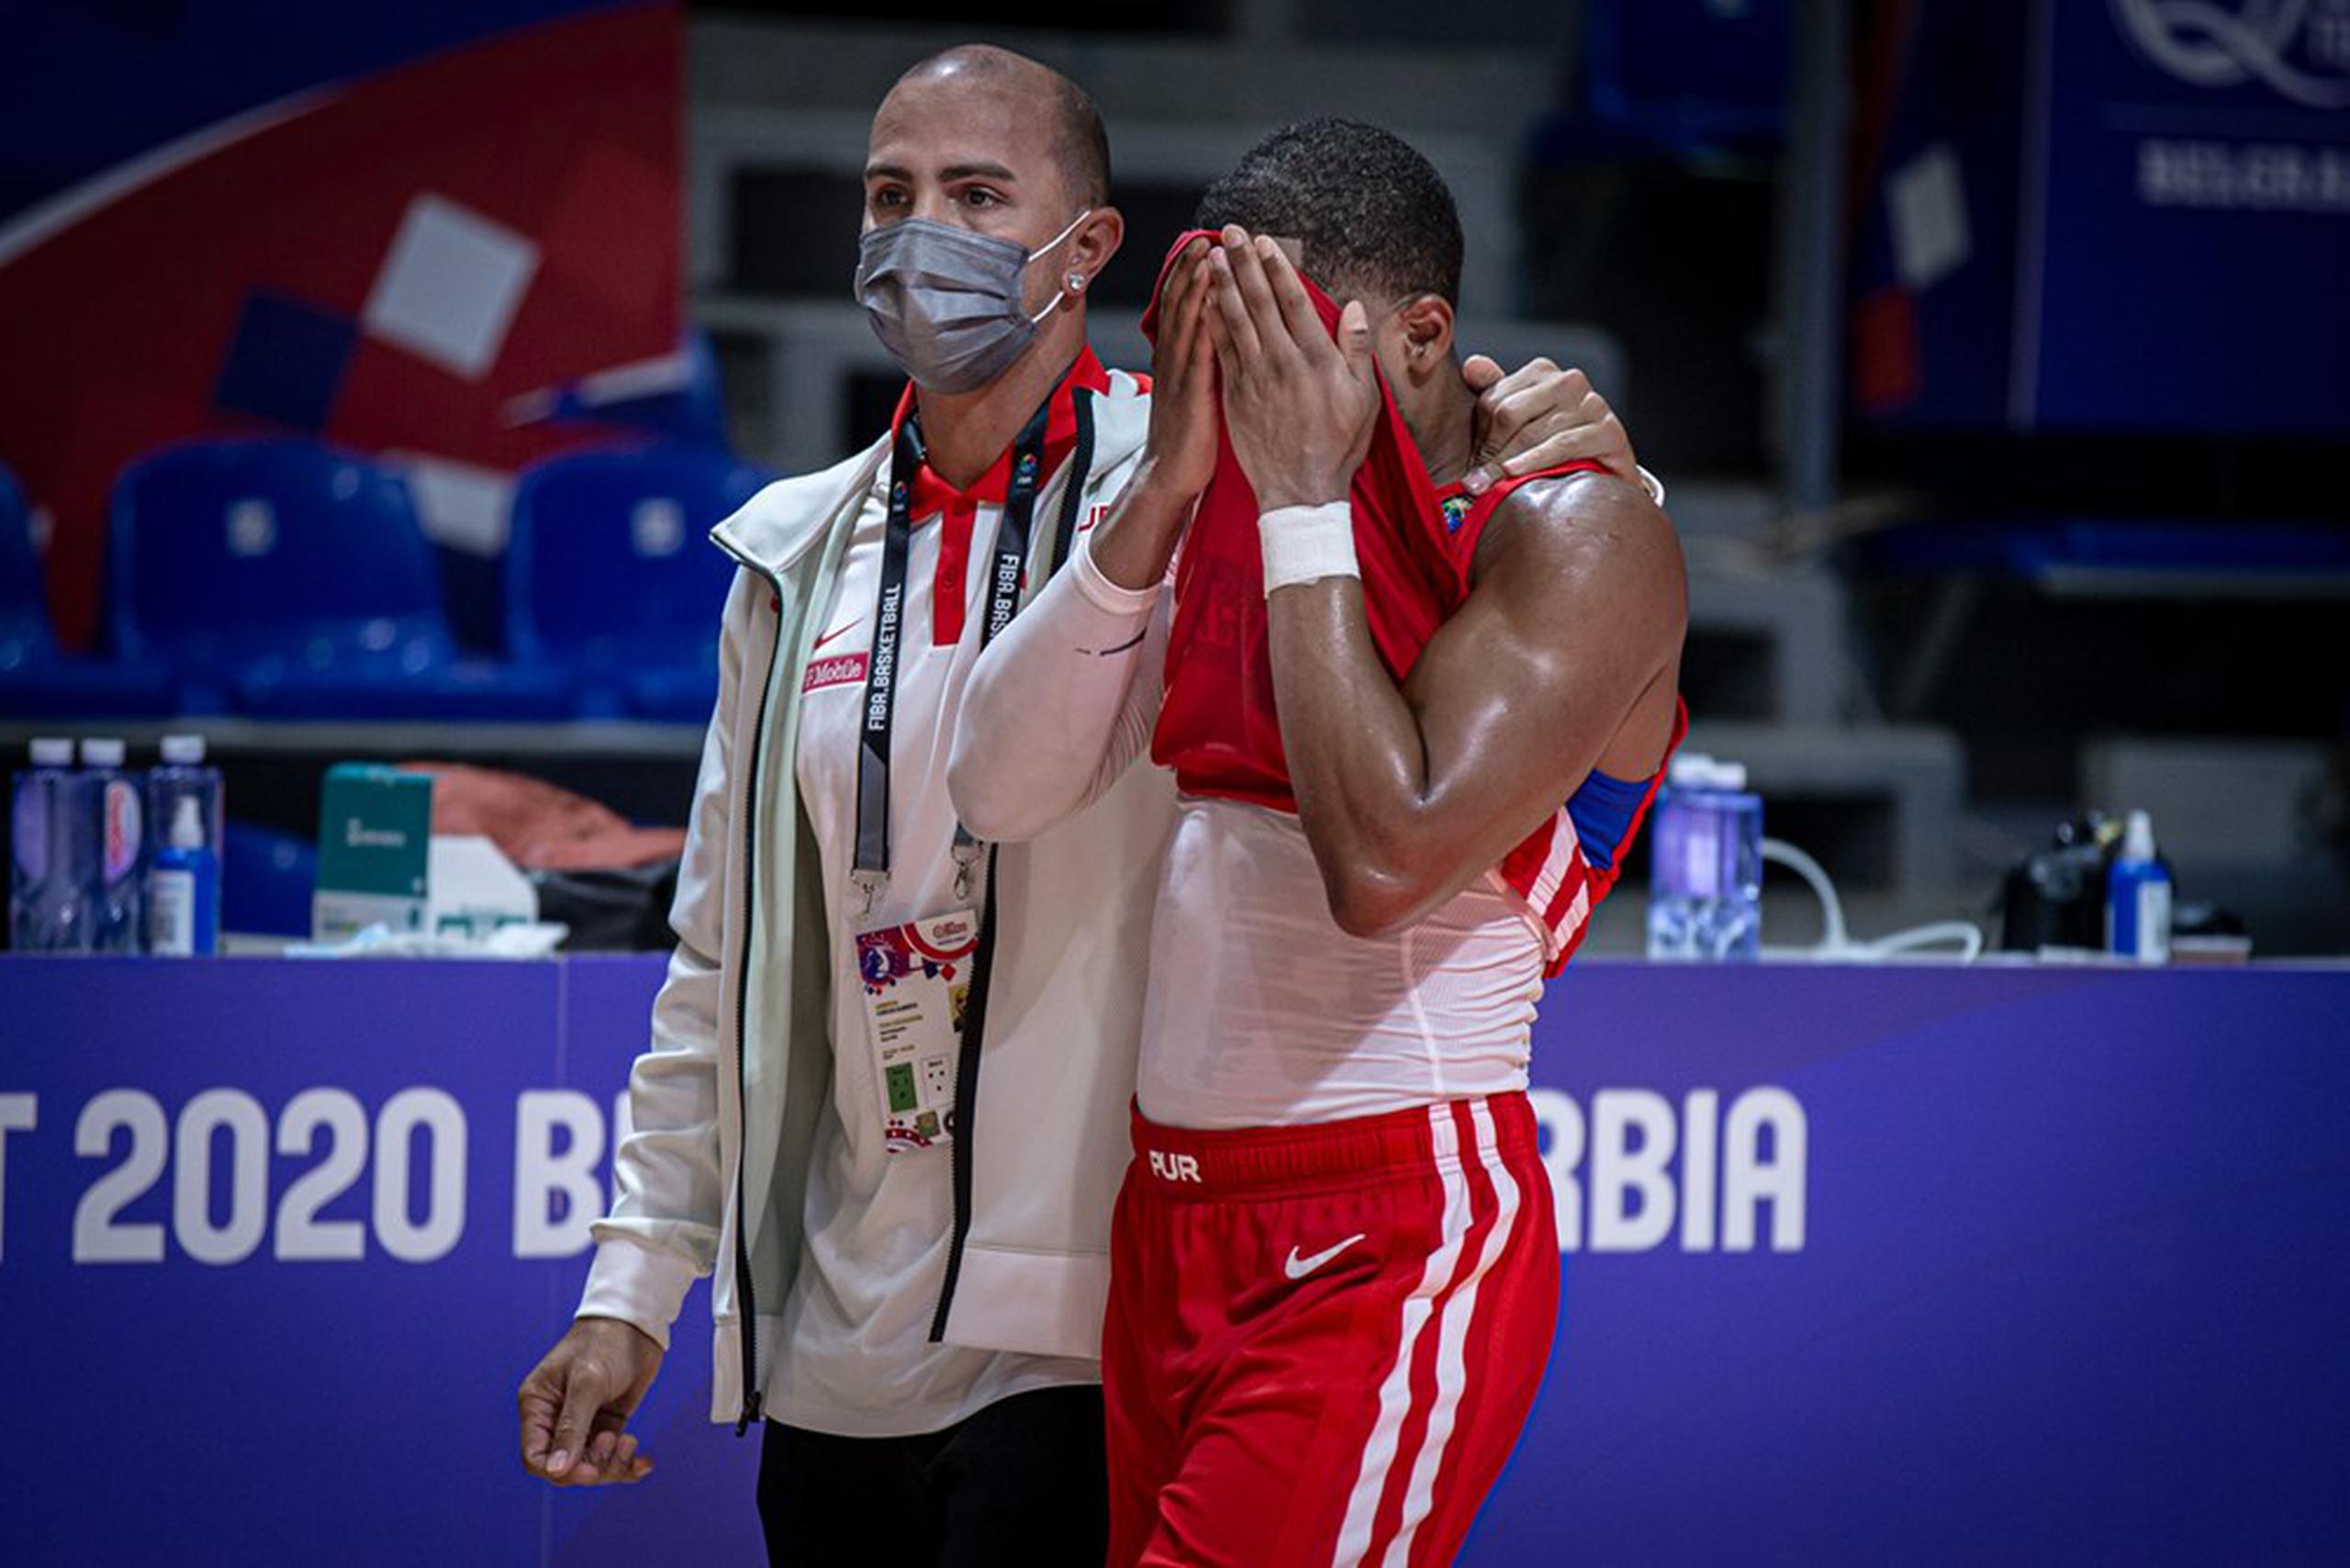 El gerente general de la selección nacional, Carlos Arroyo, aparece en esta foto de archivo consolando al armador Gary Browne durante un momento de frustración en el pasado torneo de Repechaje Olímpico en Serbia.